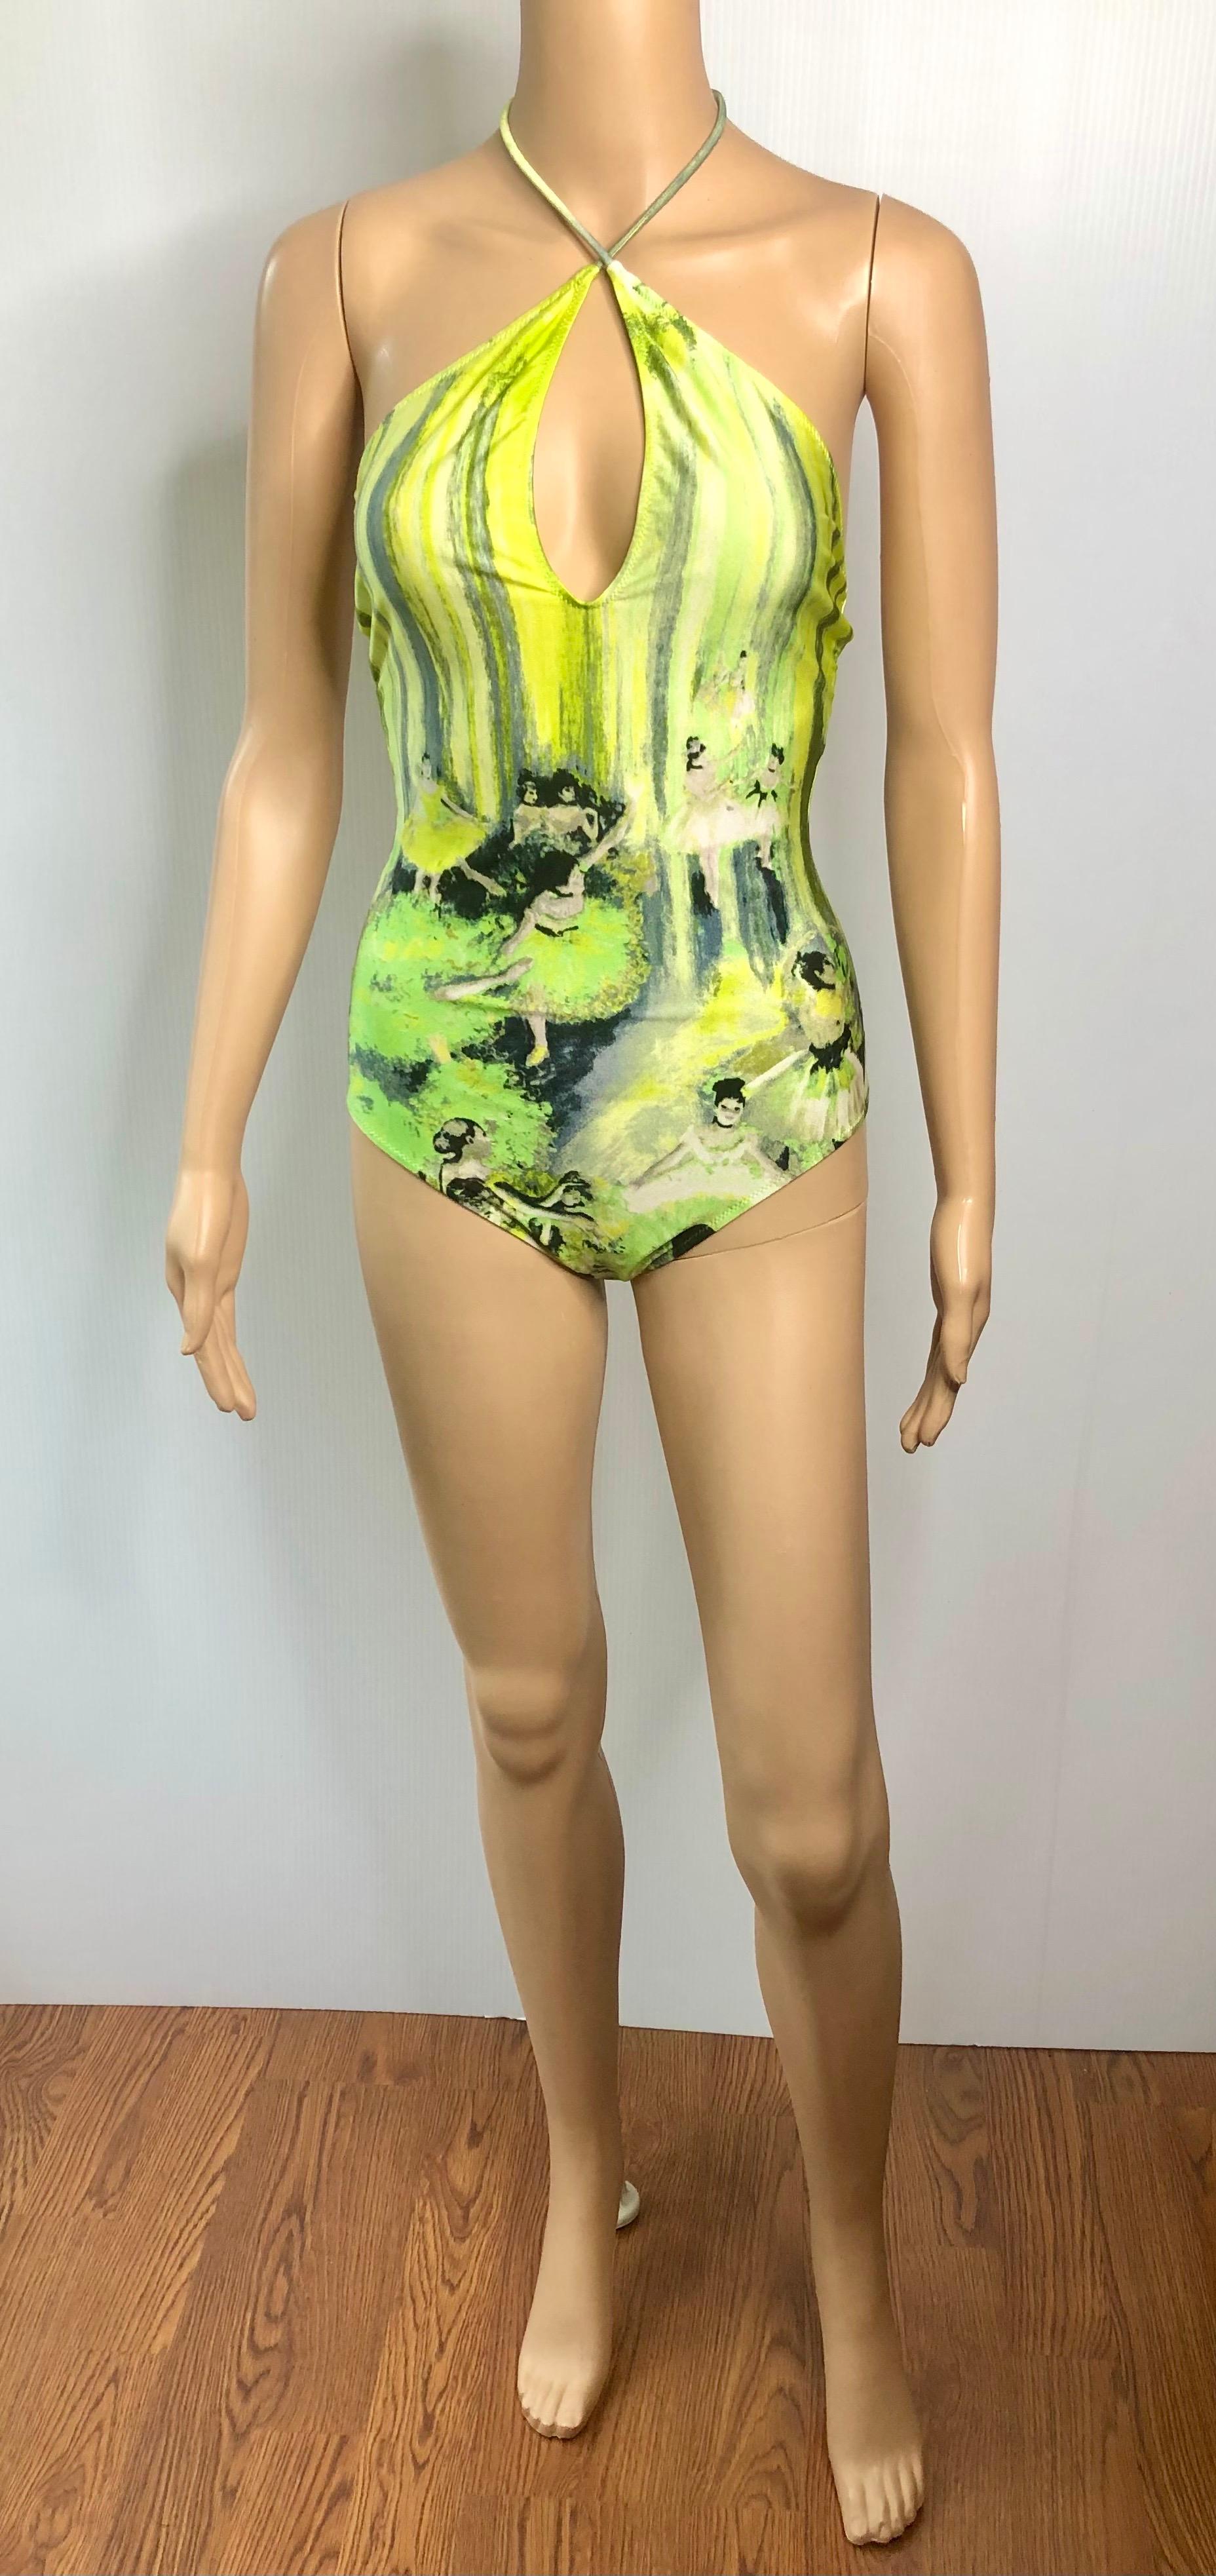 Women's Jean Paul Gaultier Soleil S/S 2004 Degas Ballet Bodysuit Swimwear Swimsuit For Sale